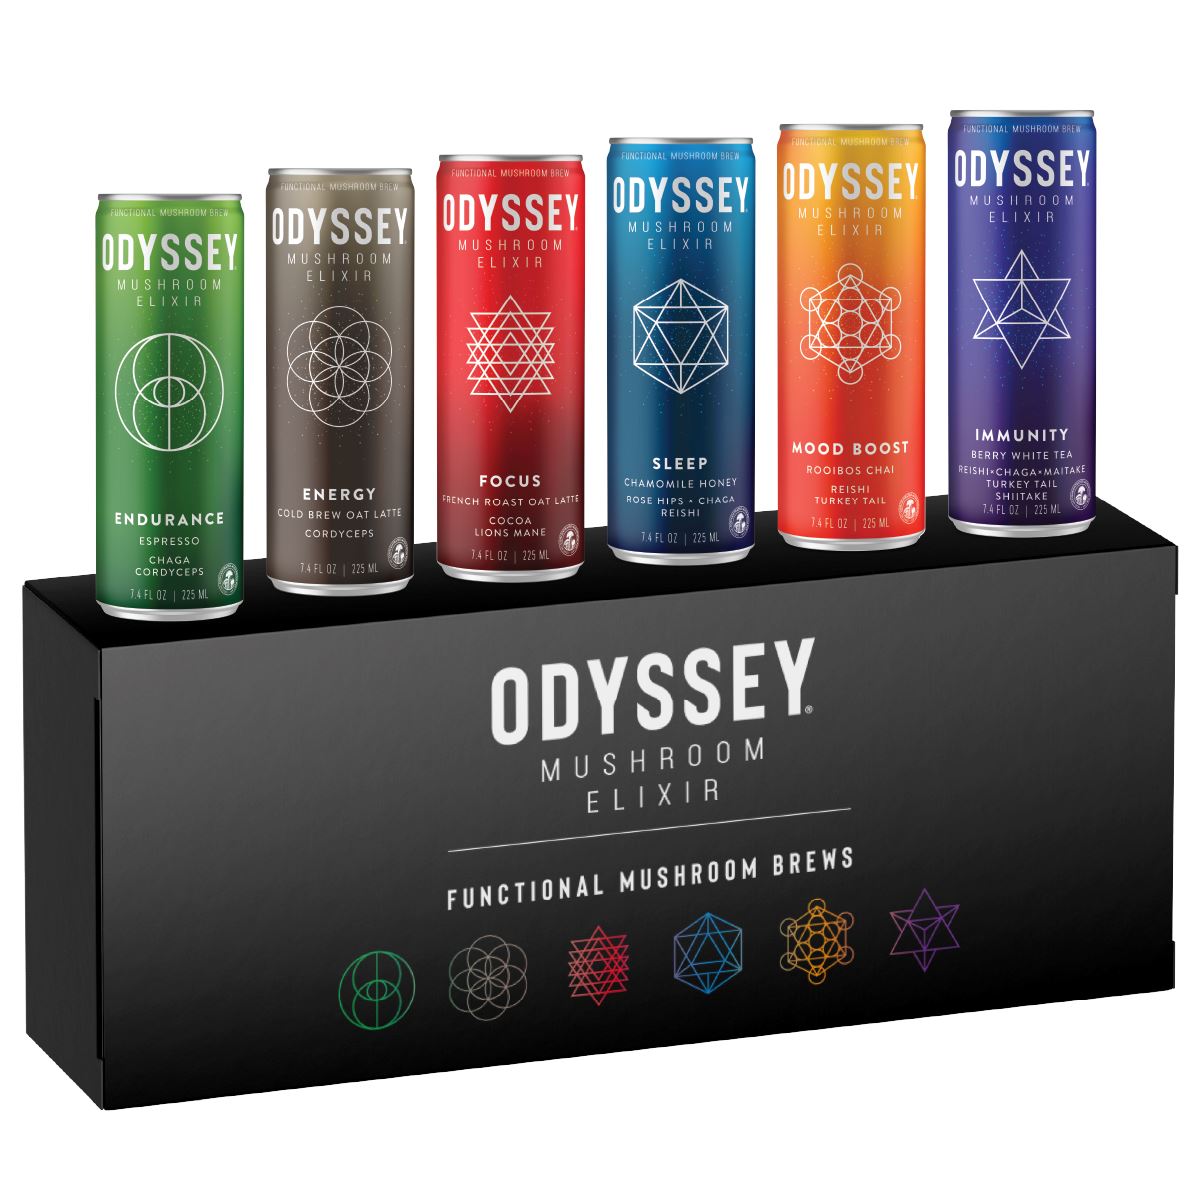 Functional Mushroom Brews Drink Beverage Odyssey Sampler Pack (6 Flavors) (1 of Each) 